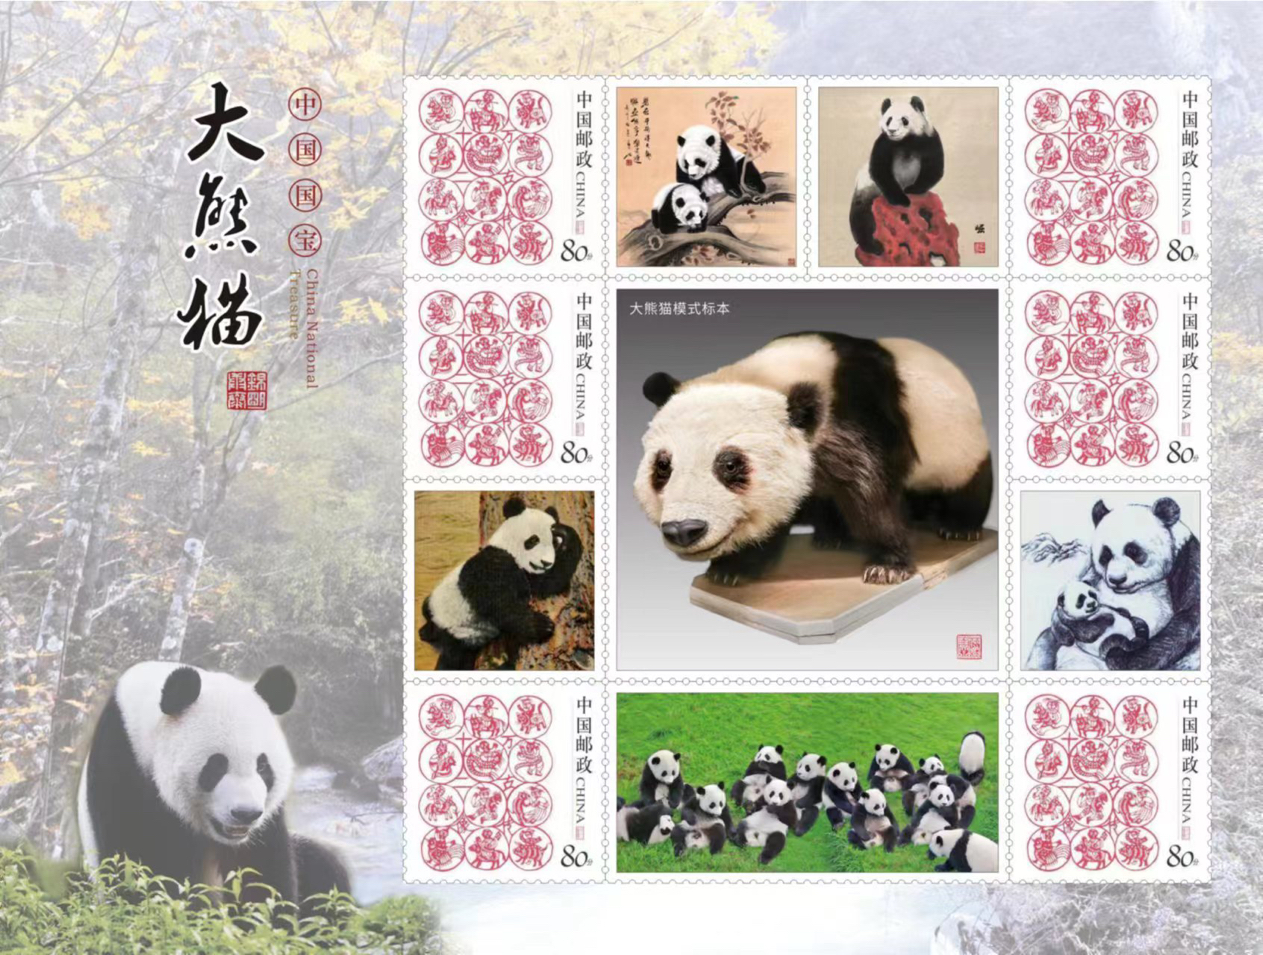 《大熊貓郵集圖鑒》內頁